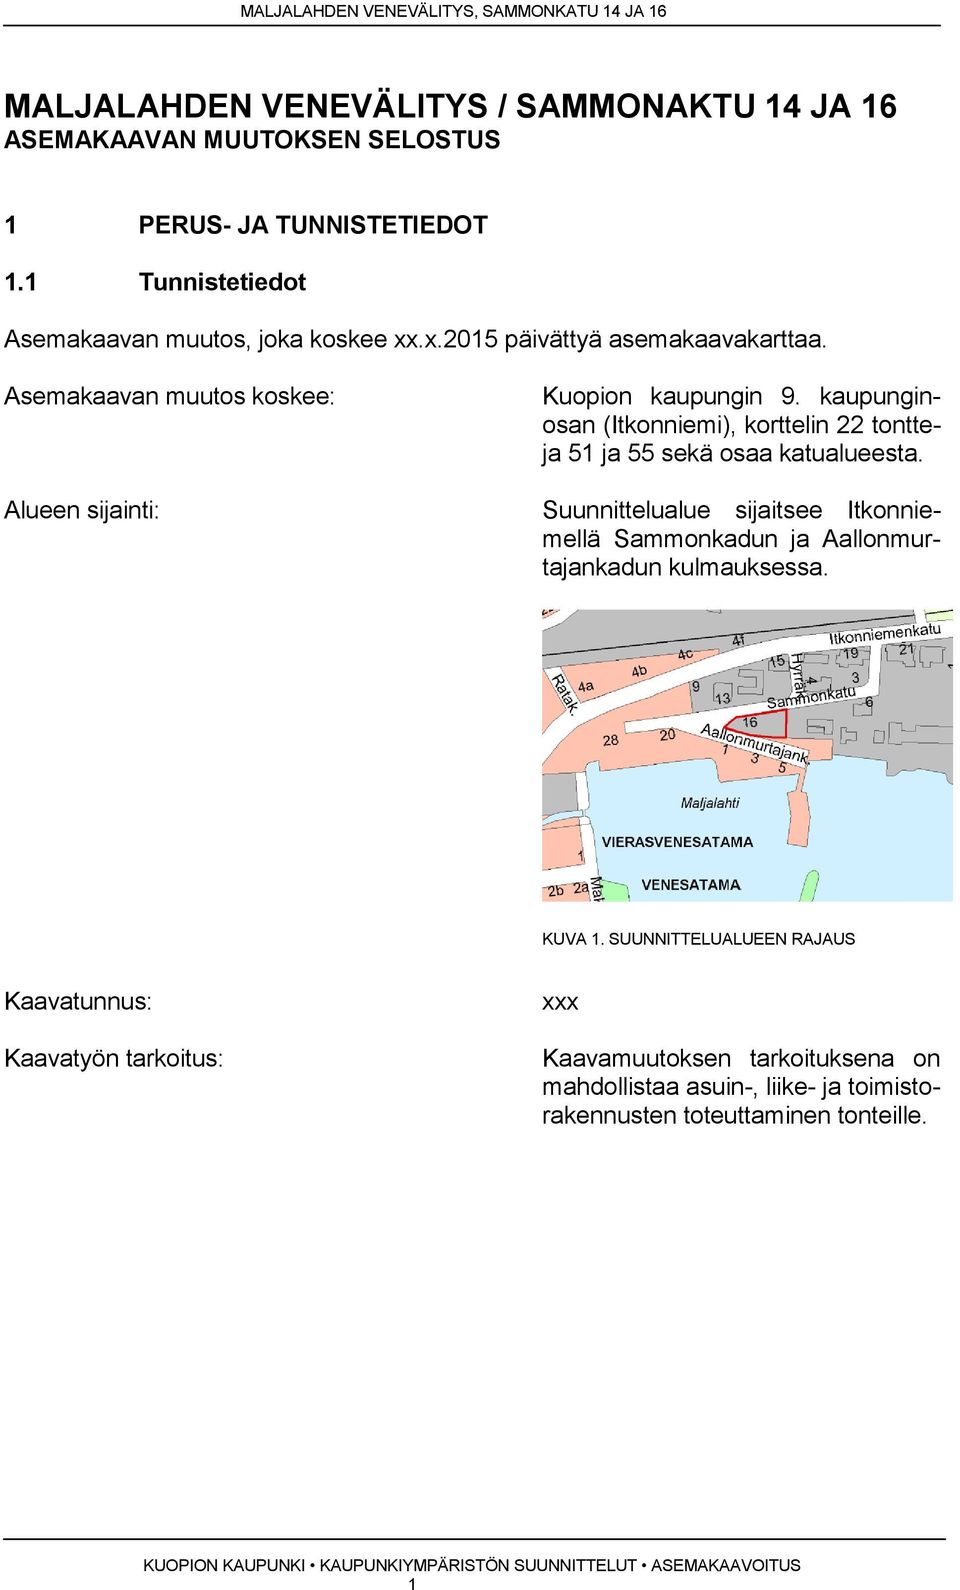 kaupunginosan (Itkonniemi), korttelin 22 tontteja 51 ja 55 sekä osaa katualueesta.